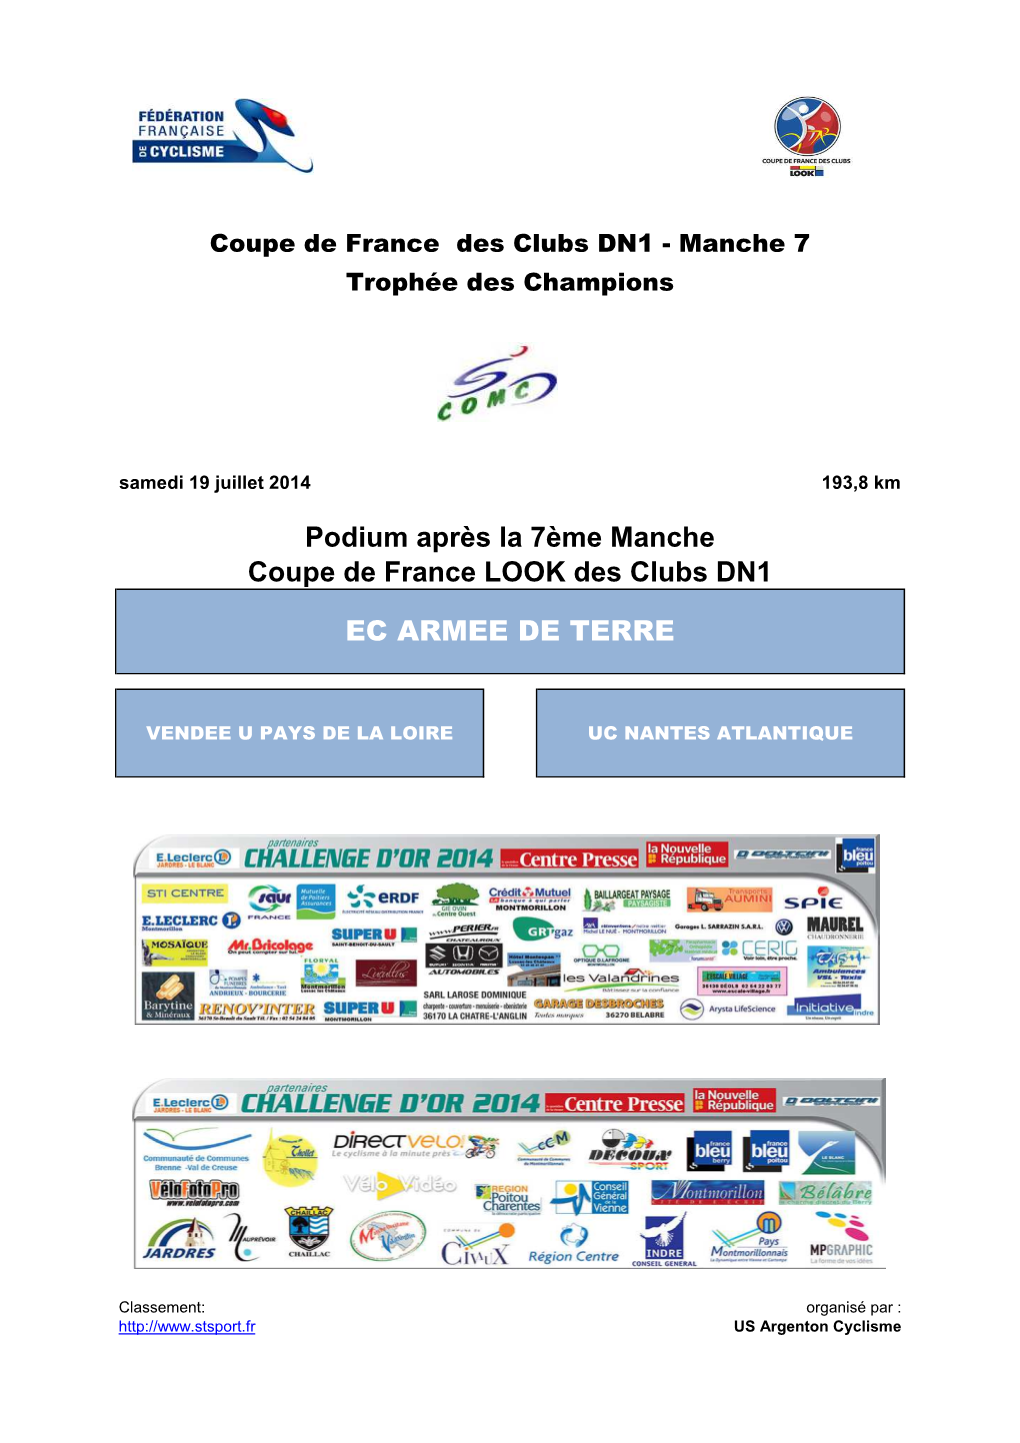 Podium Après La 7Ème Manche Coupe De France LOOK Des Clubs DN1